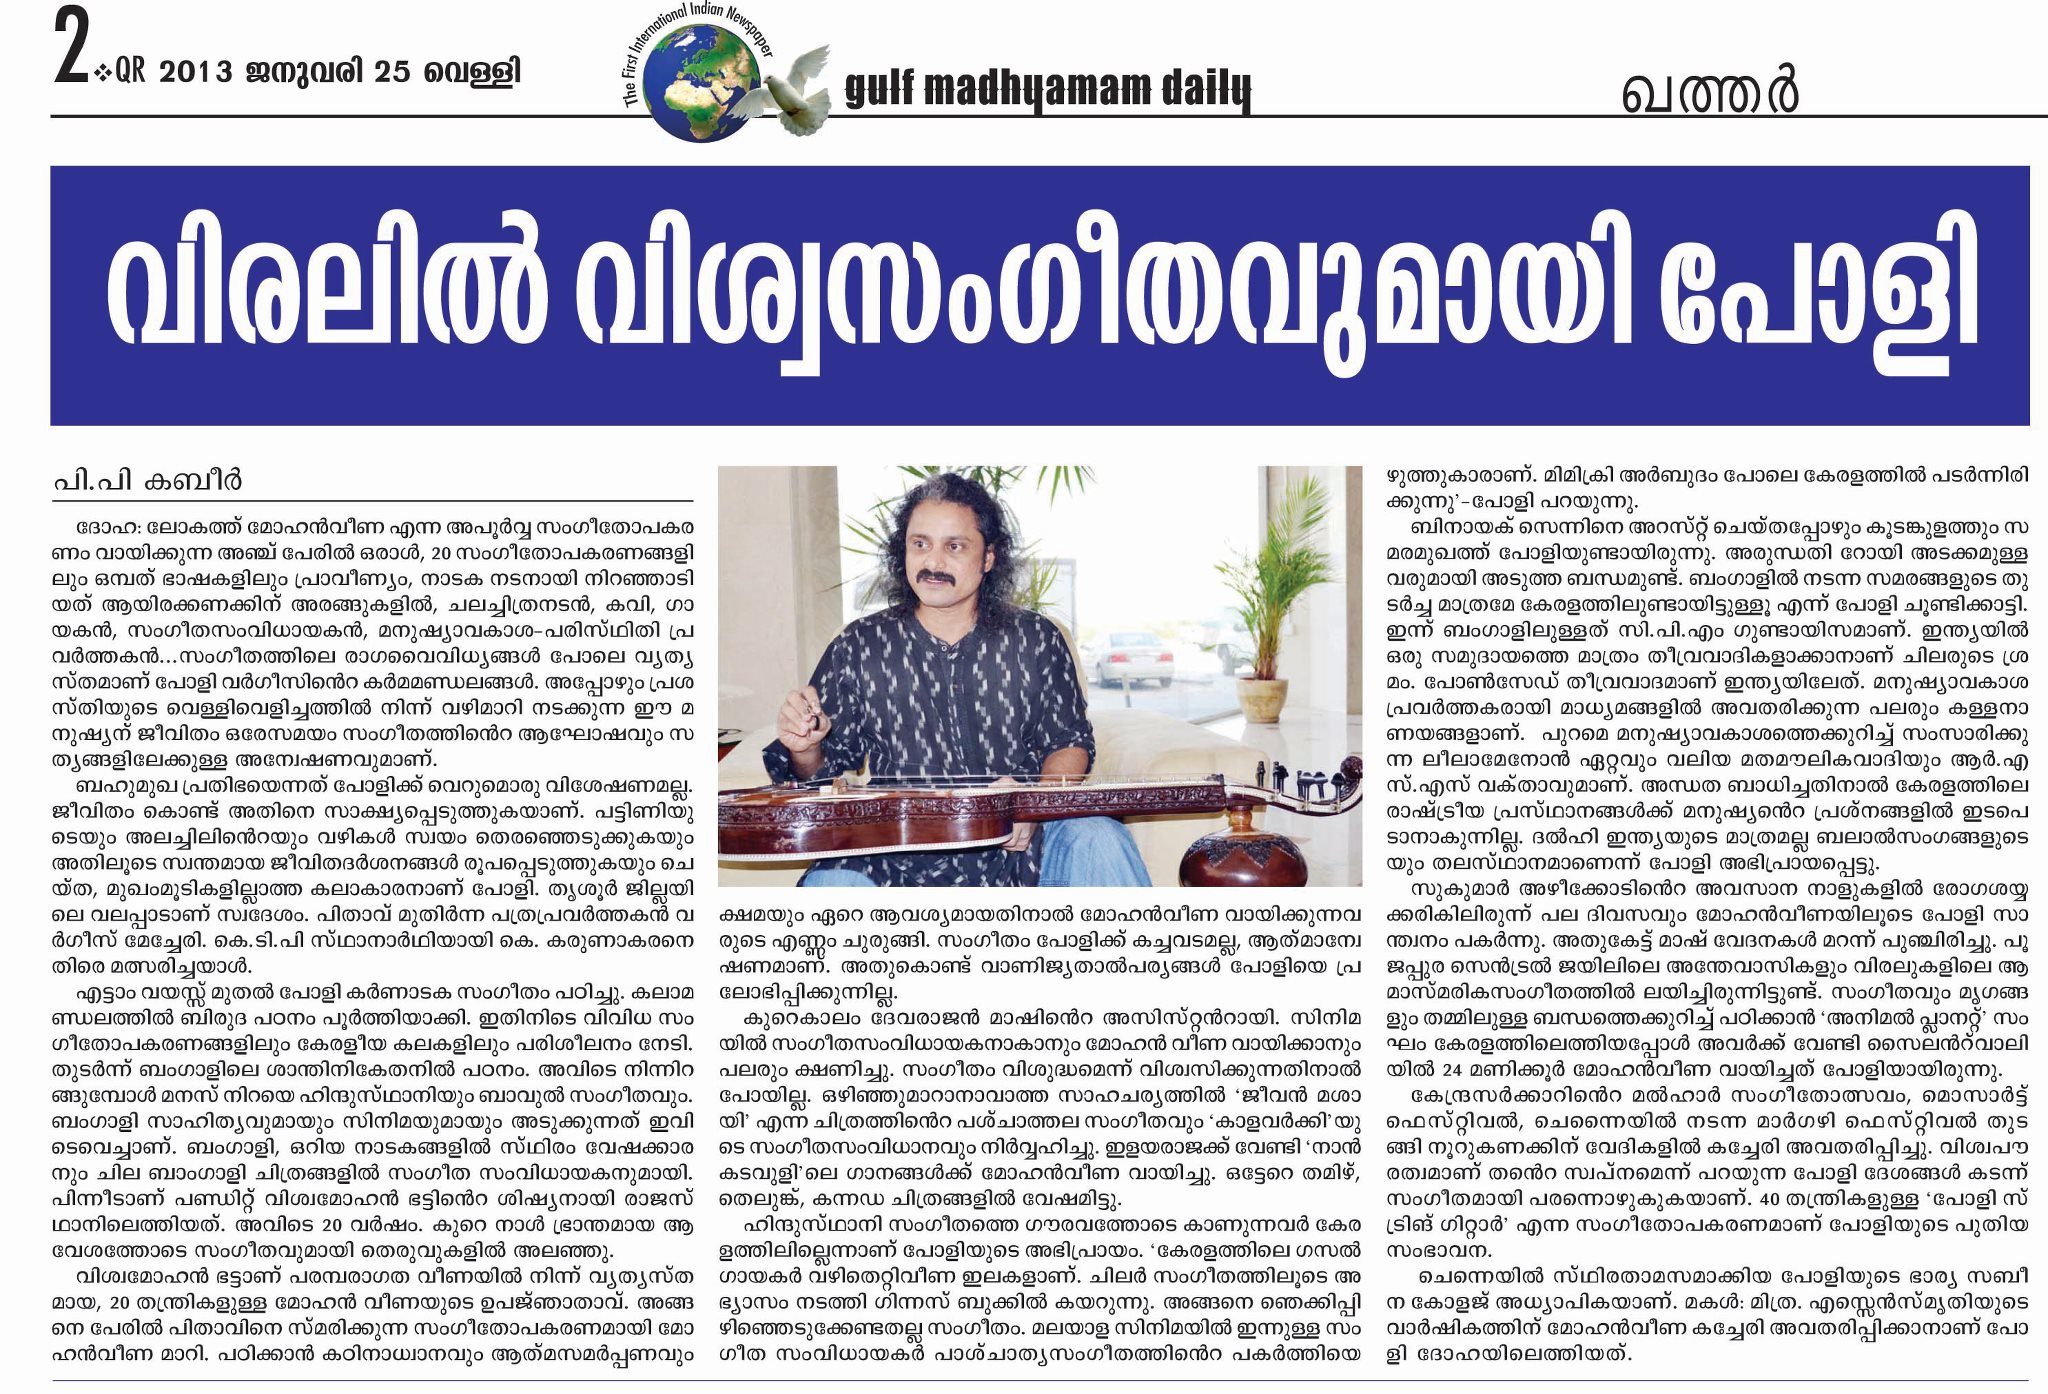 Gulf Madhyam Daily on 25 January 2013